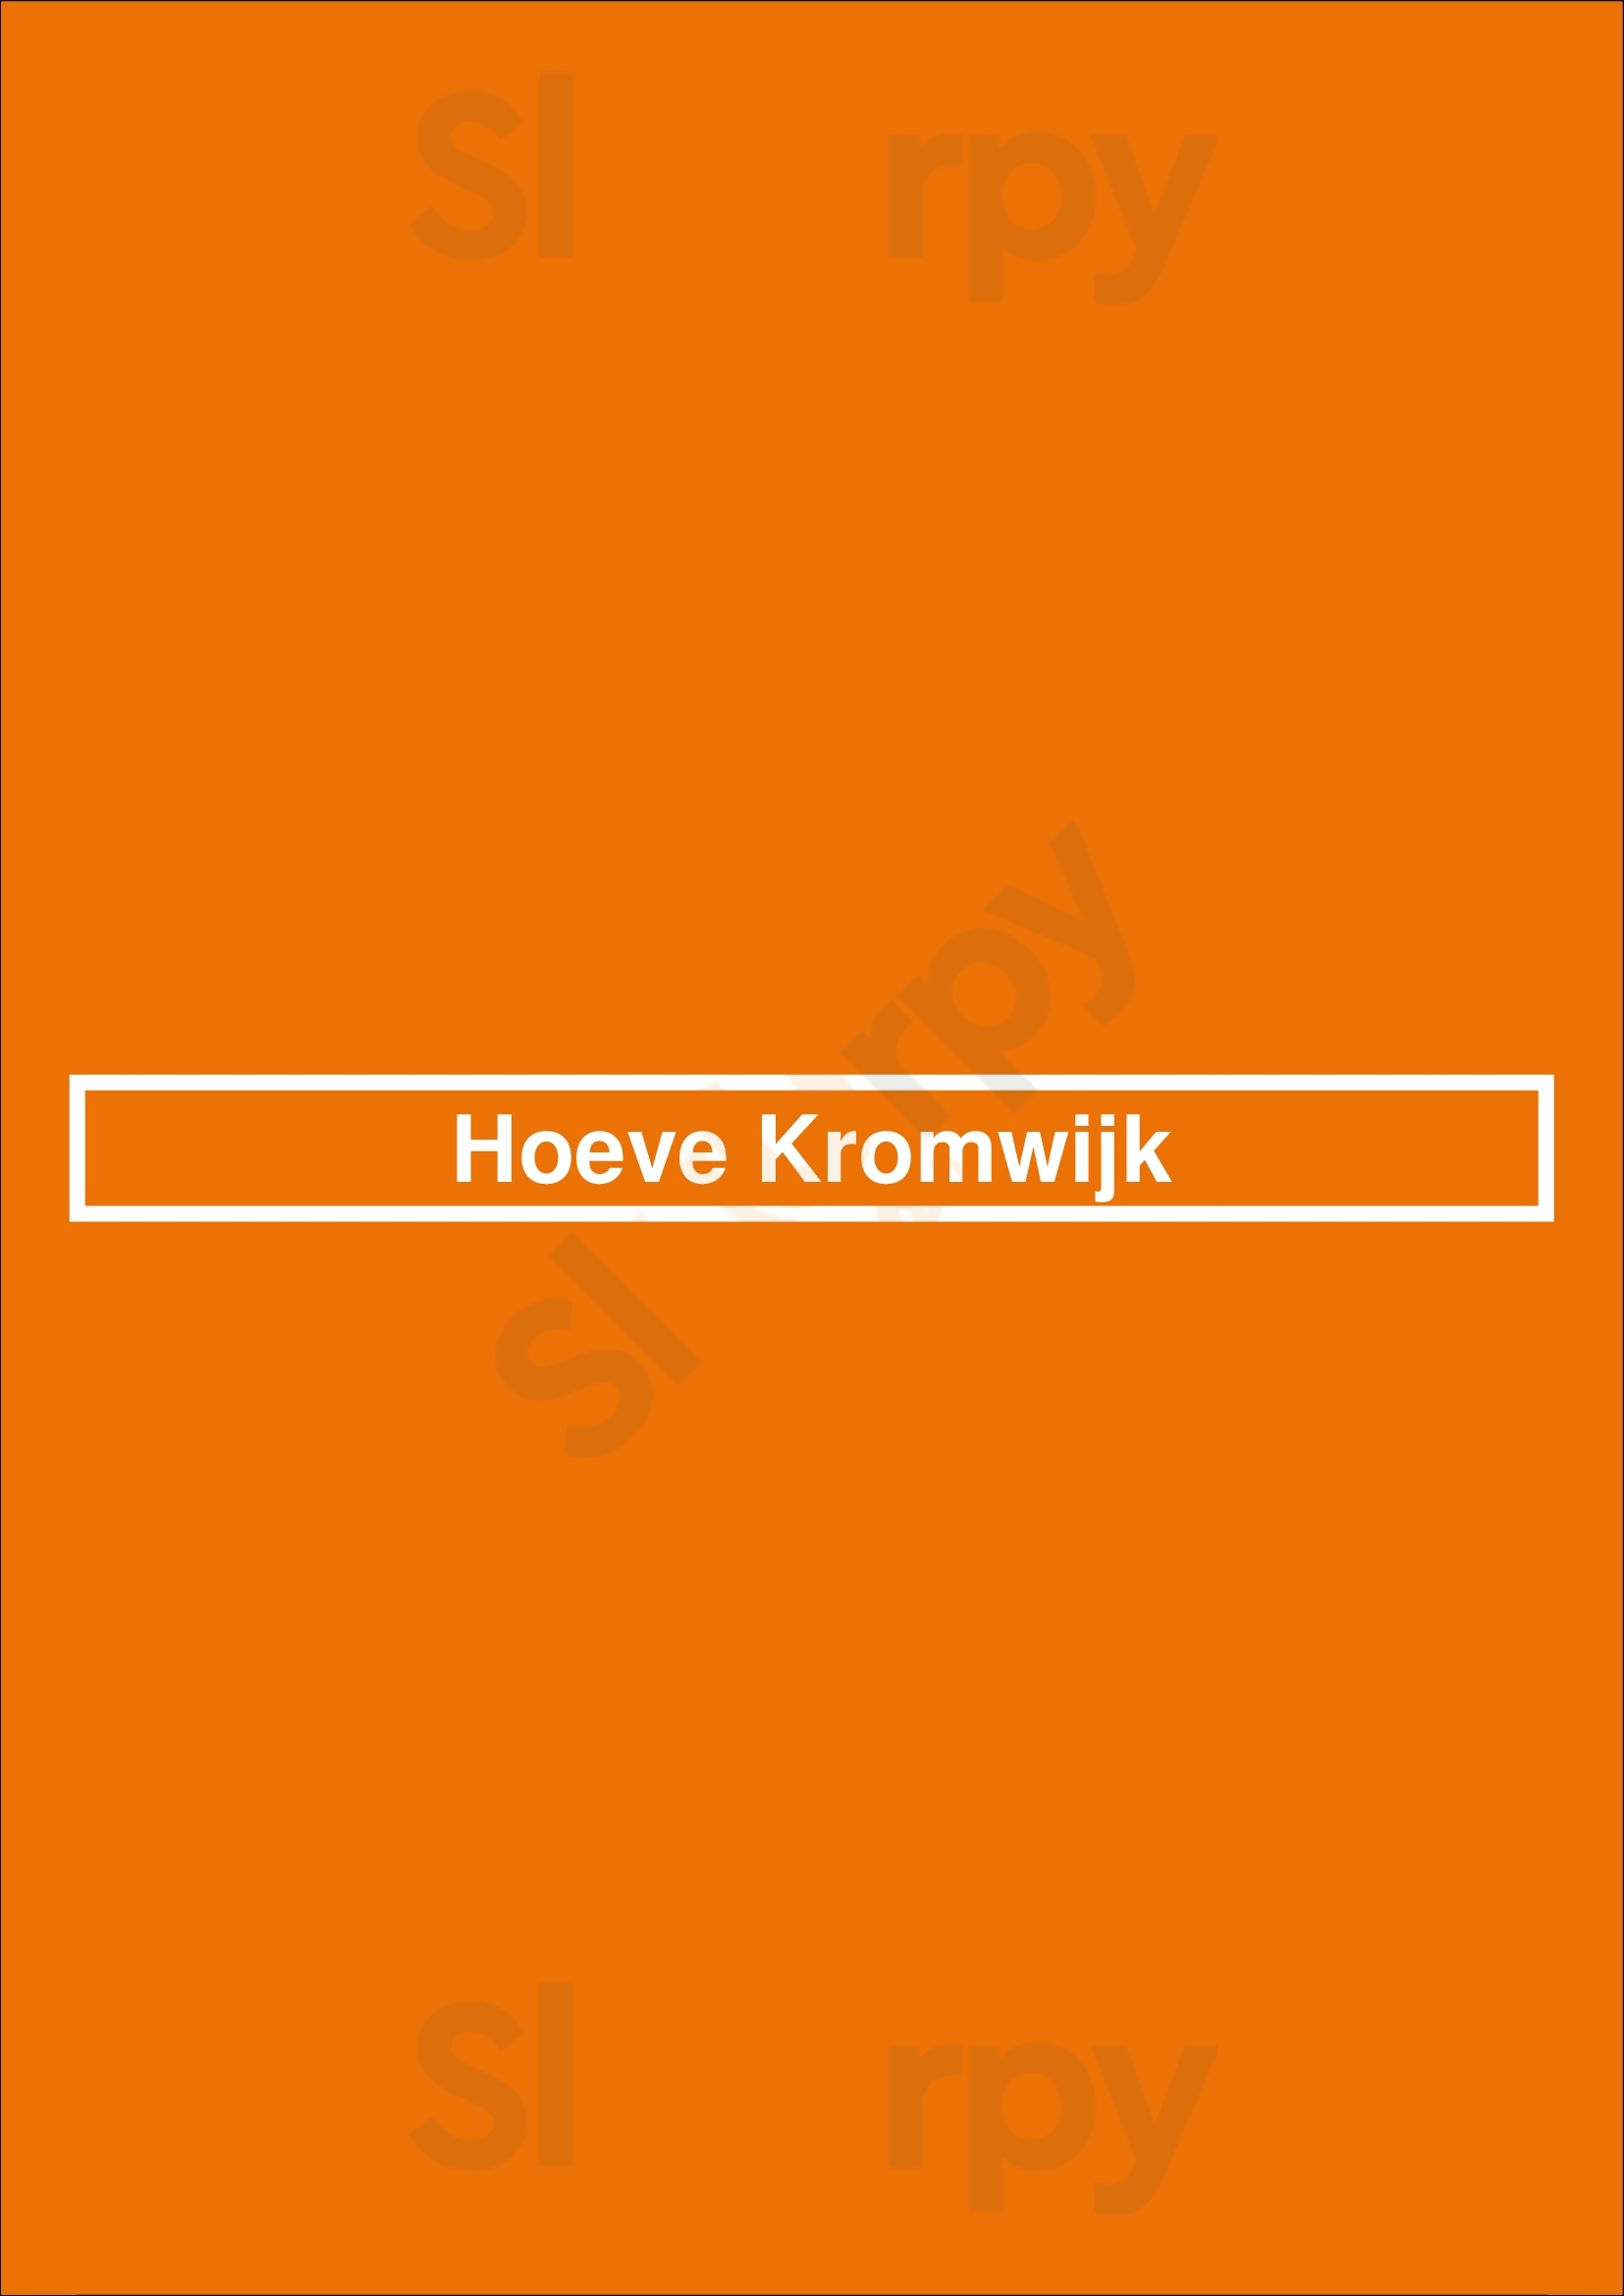 Hoeve Kromwijk Zoetermeer Menu - 1